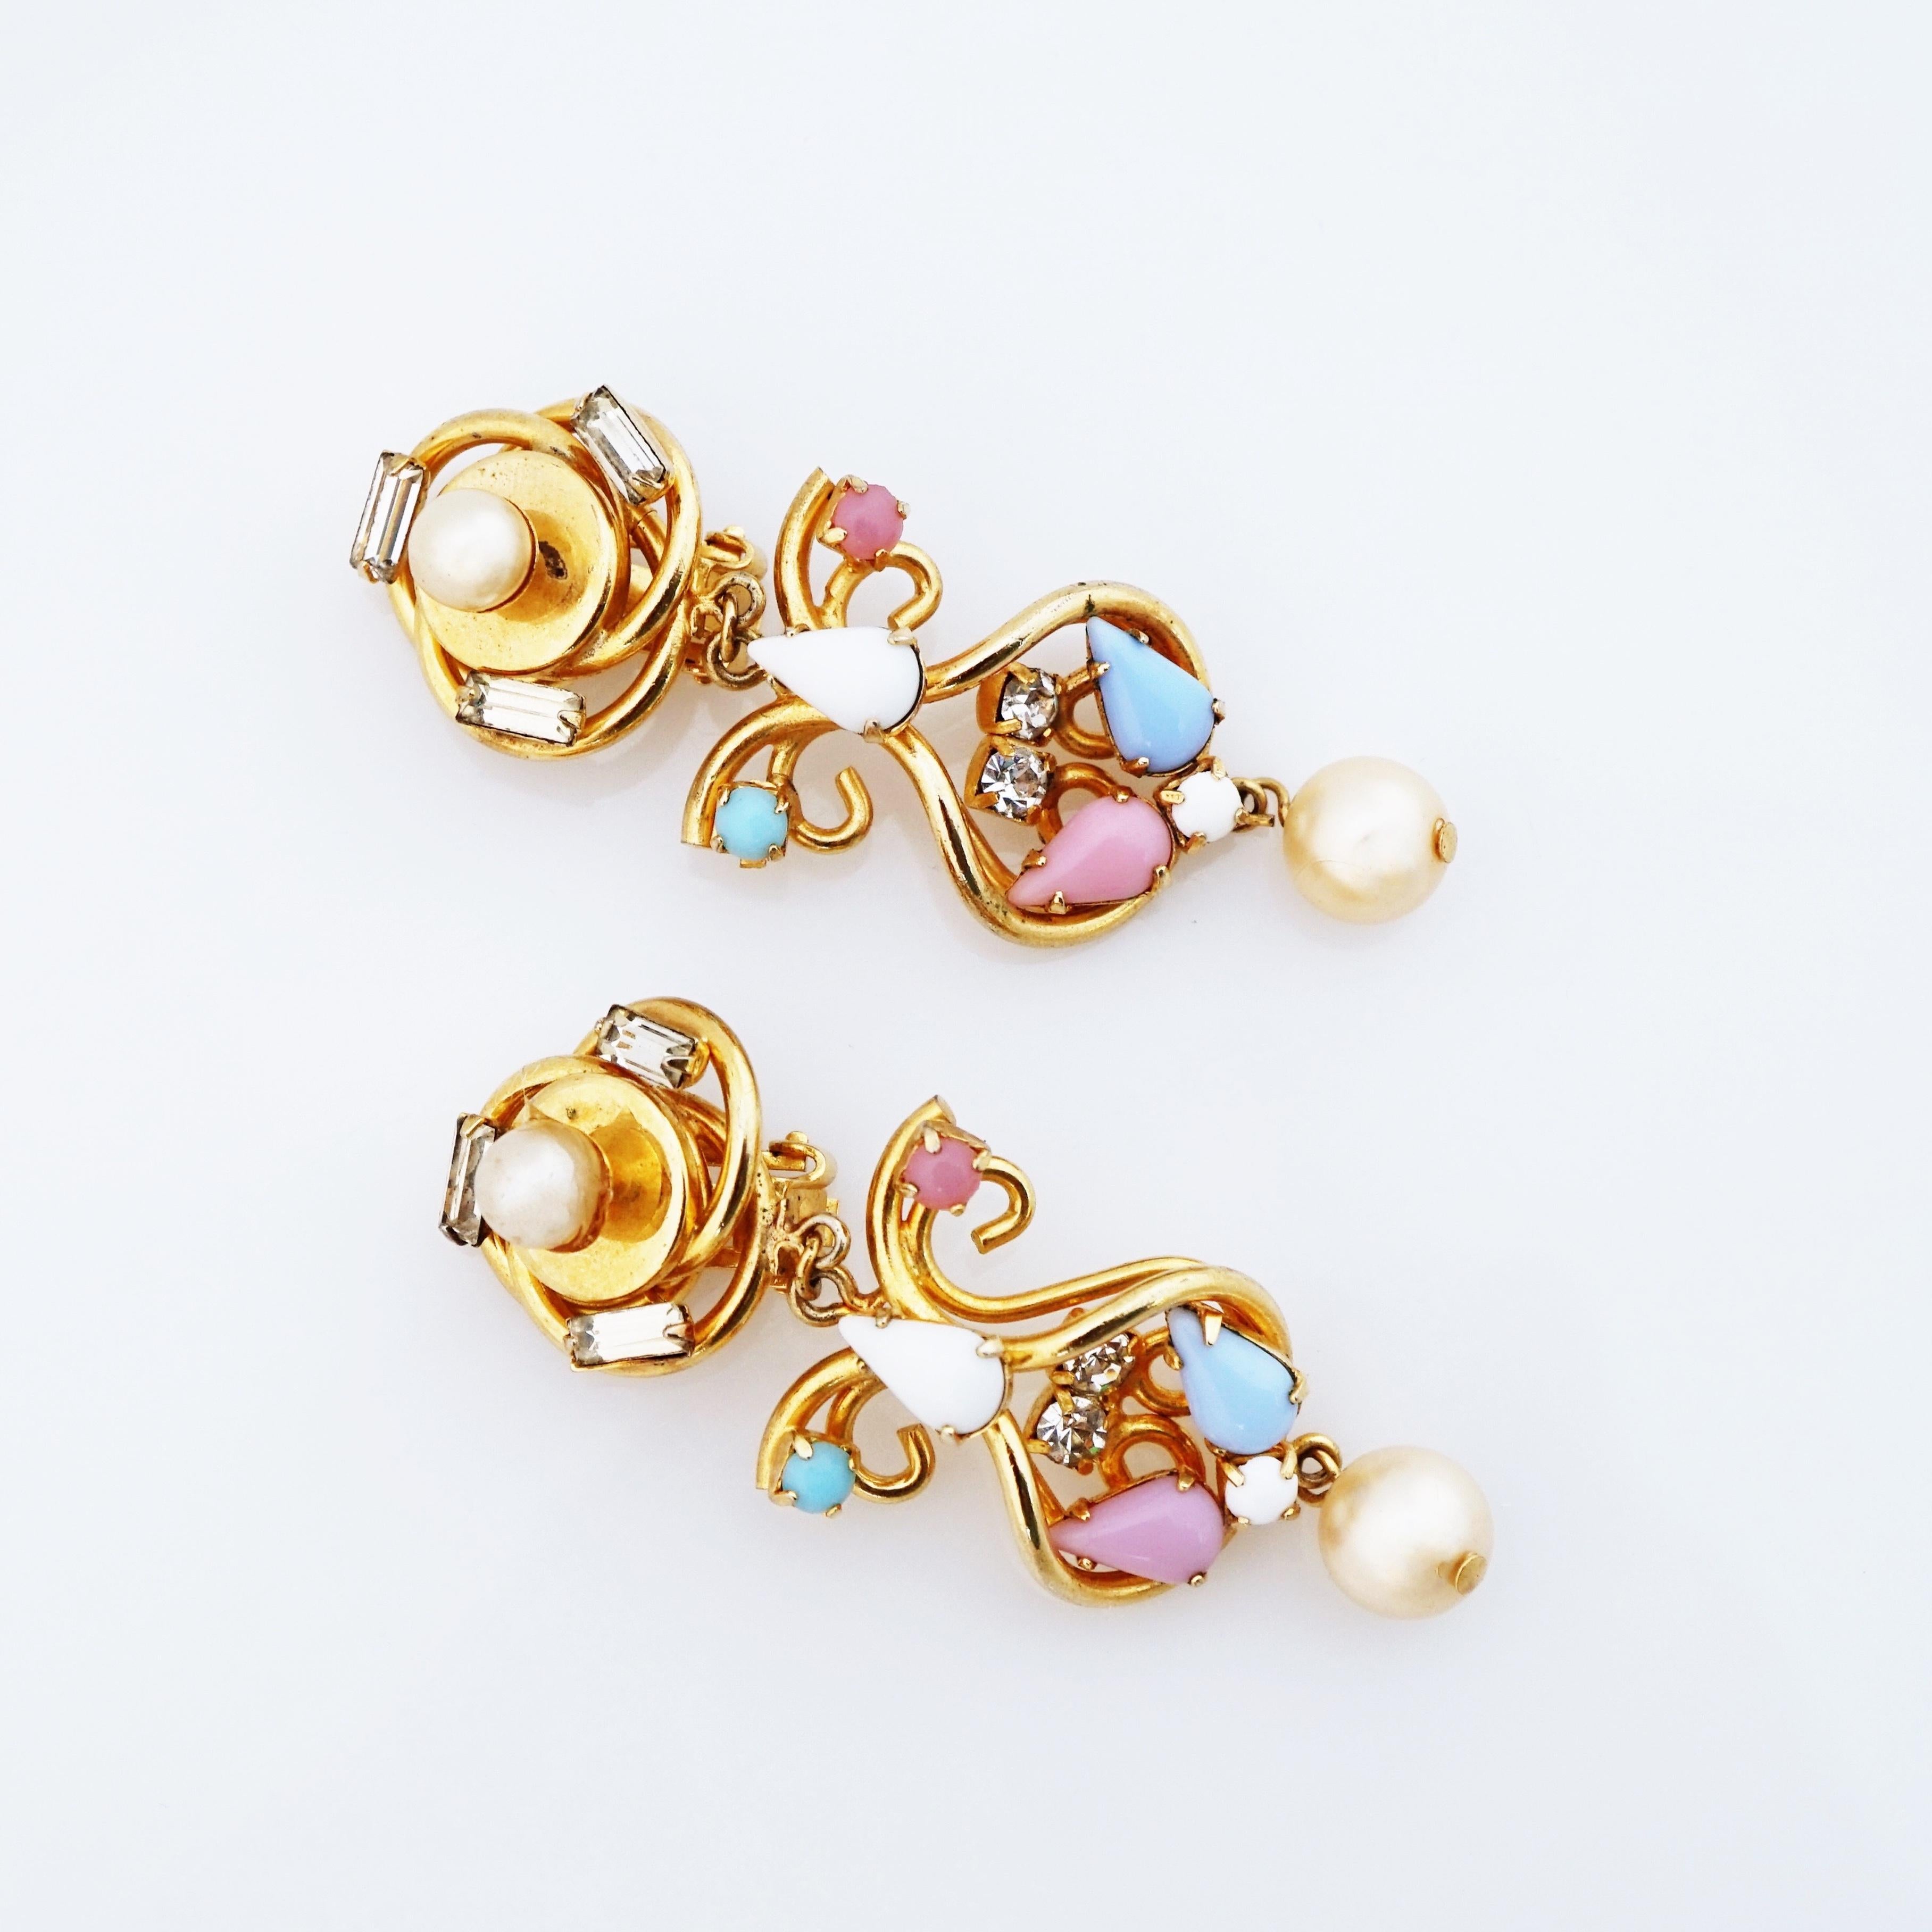 pearl statement earrings